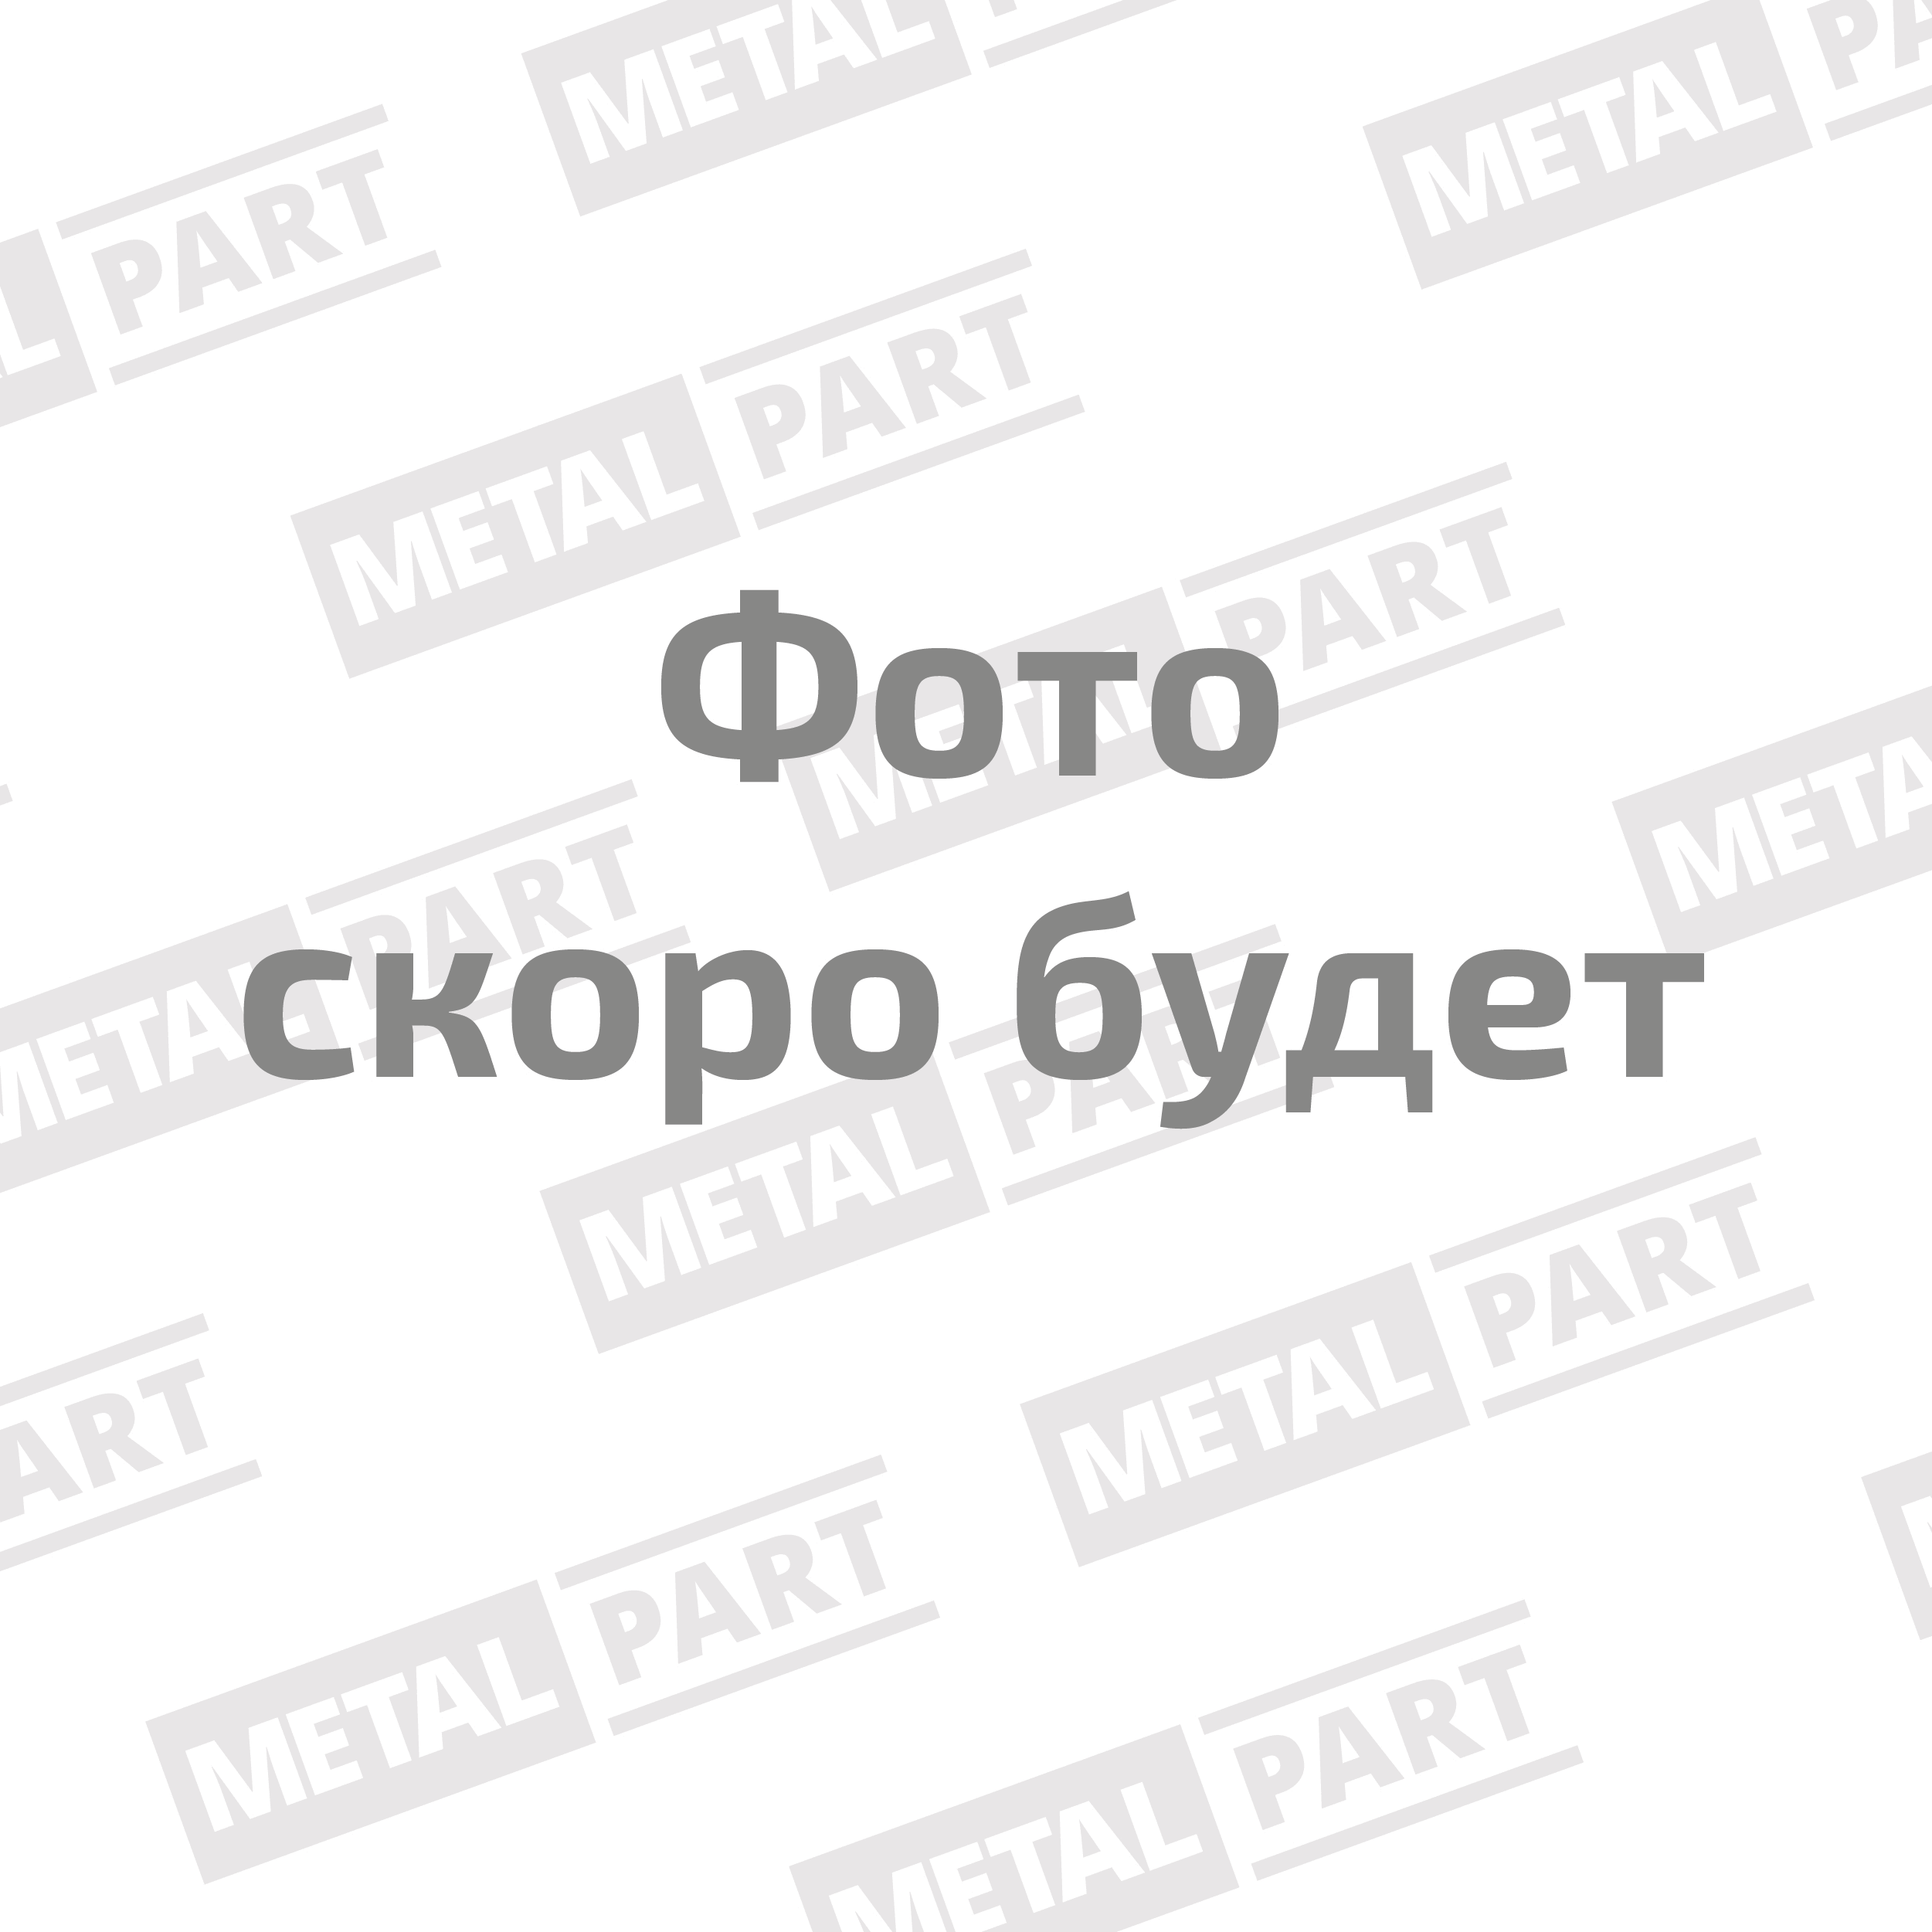 Вал карданный "MetalPart" переднего моста для автомобилей УАЗ -3163 PATRIOT с раздаточной коробкой "